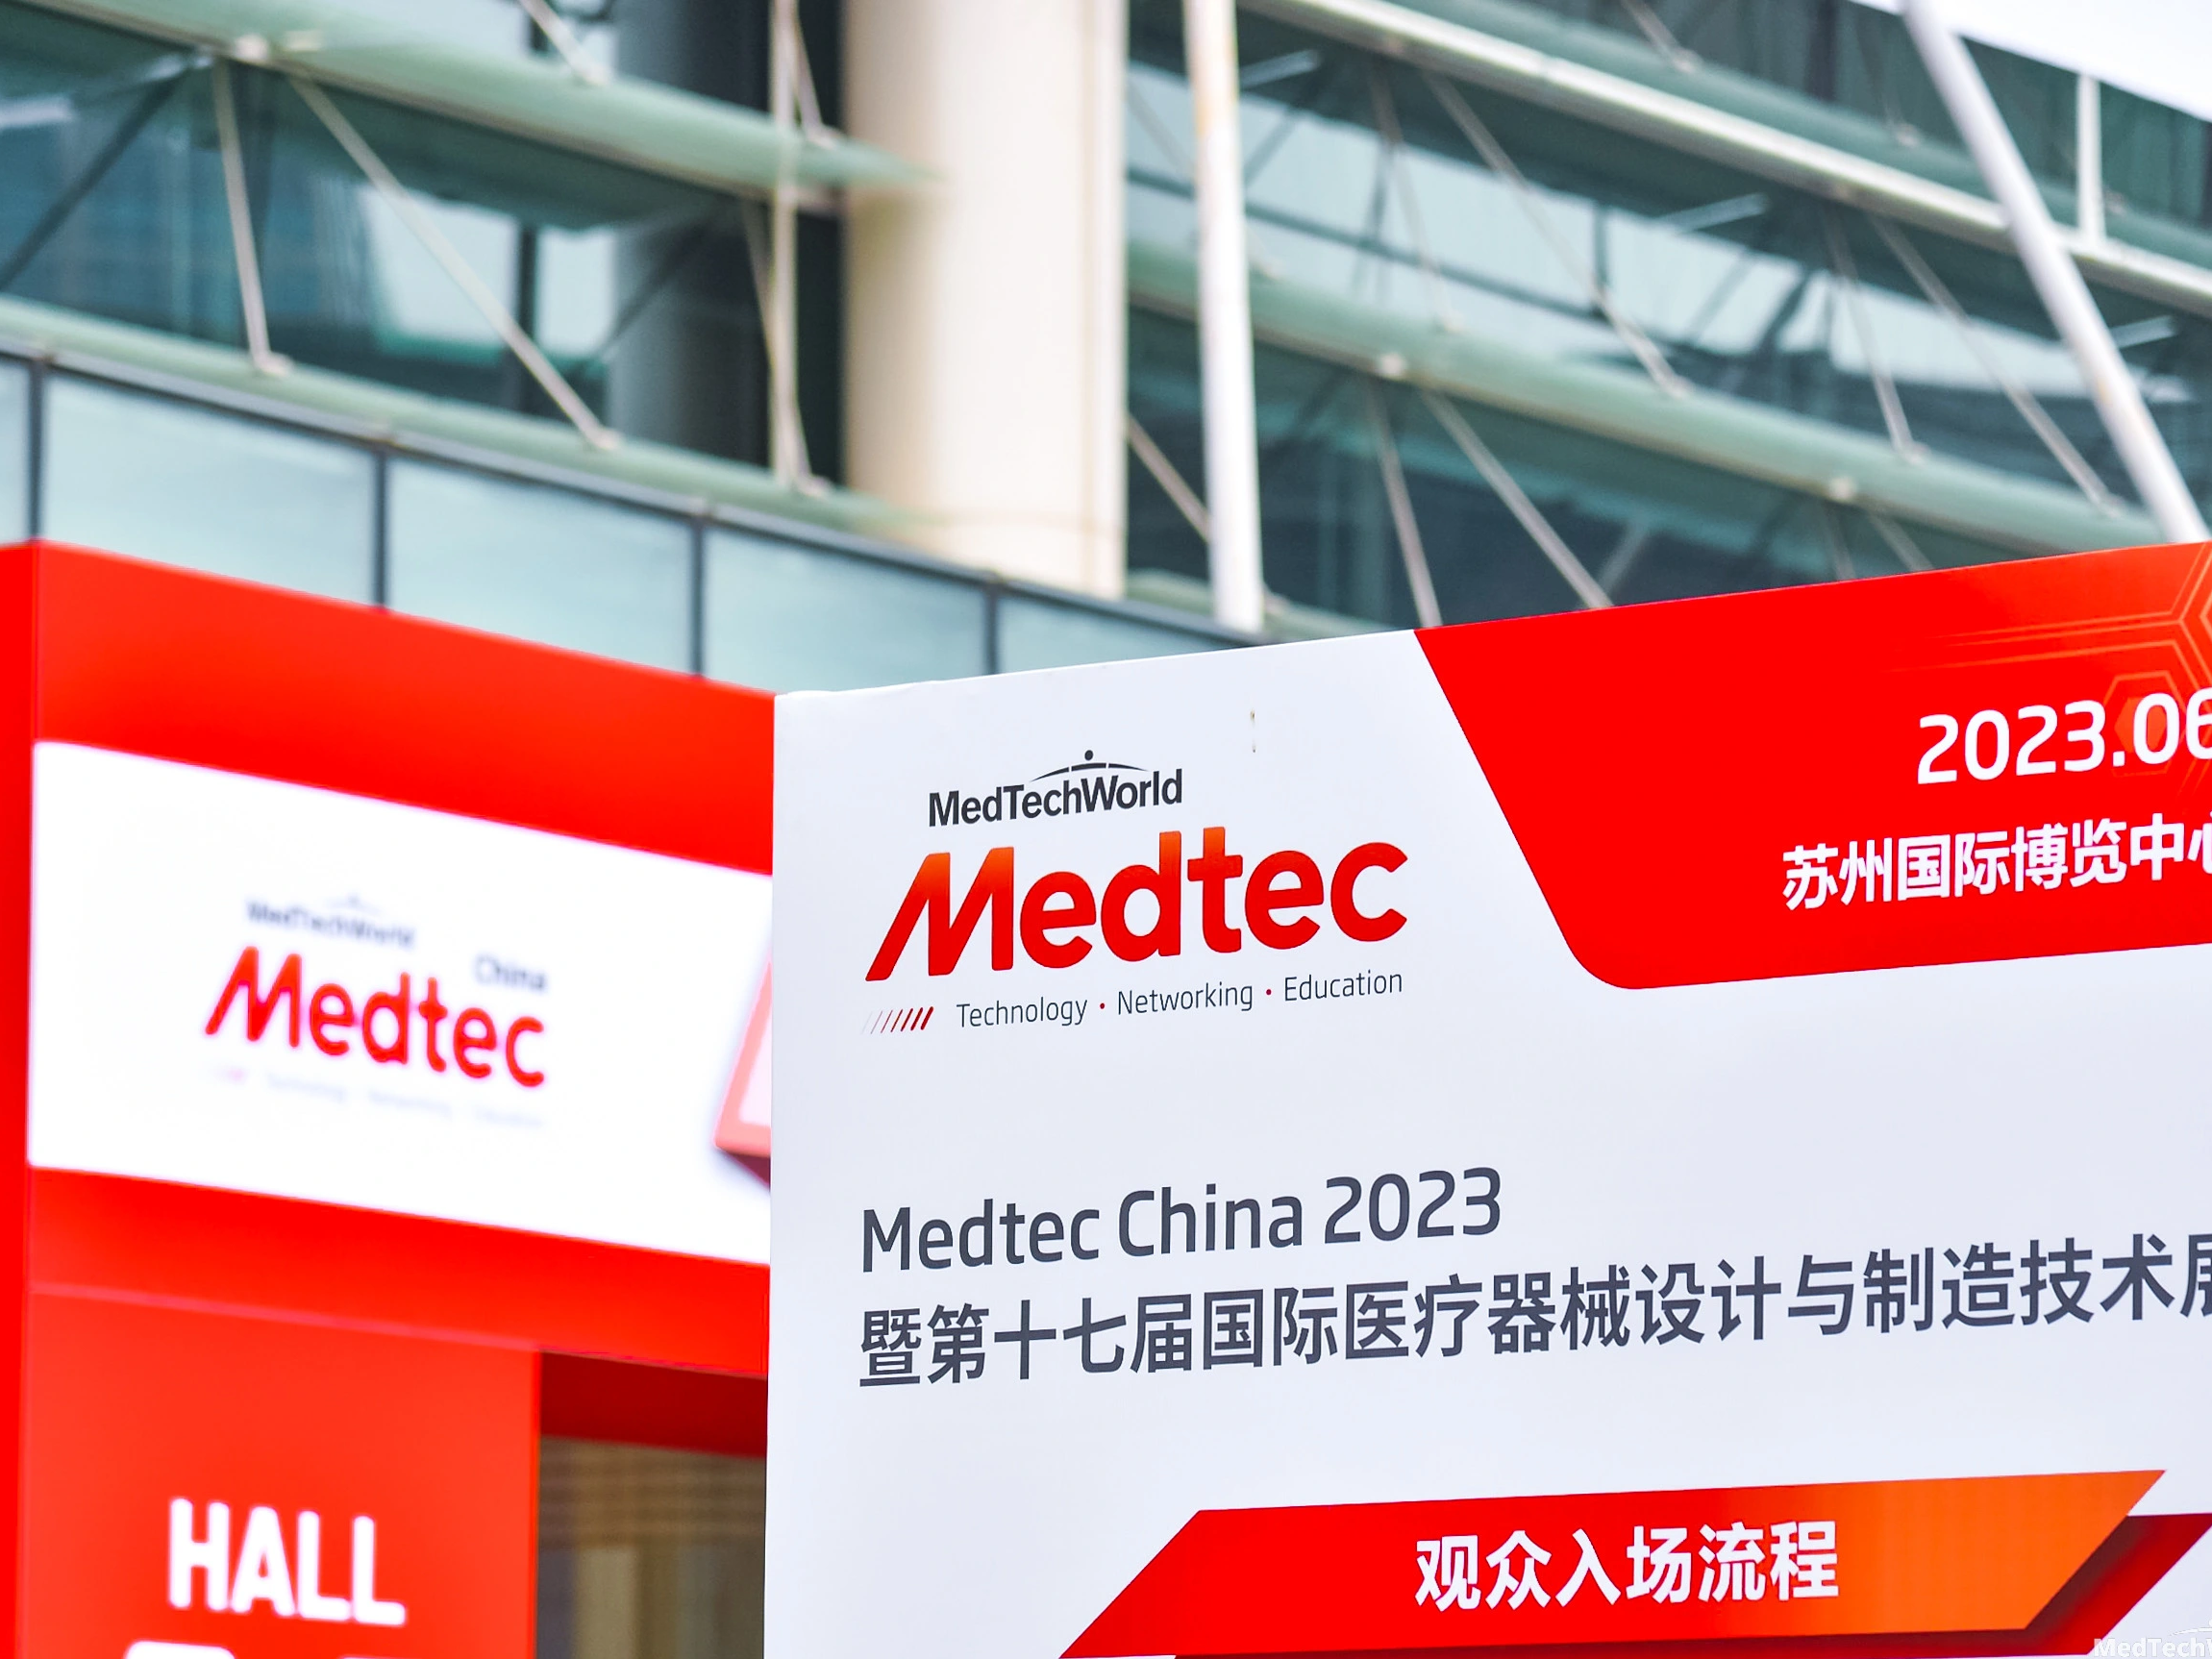 Medtec China 2023 in Suzhou, China